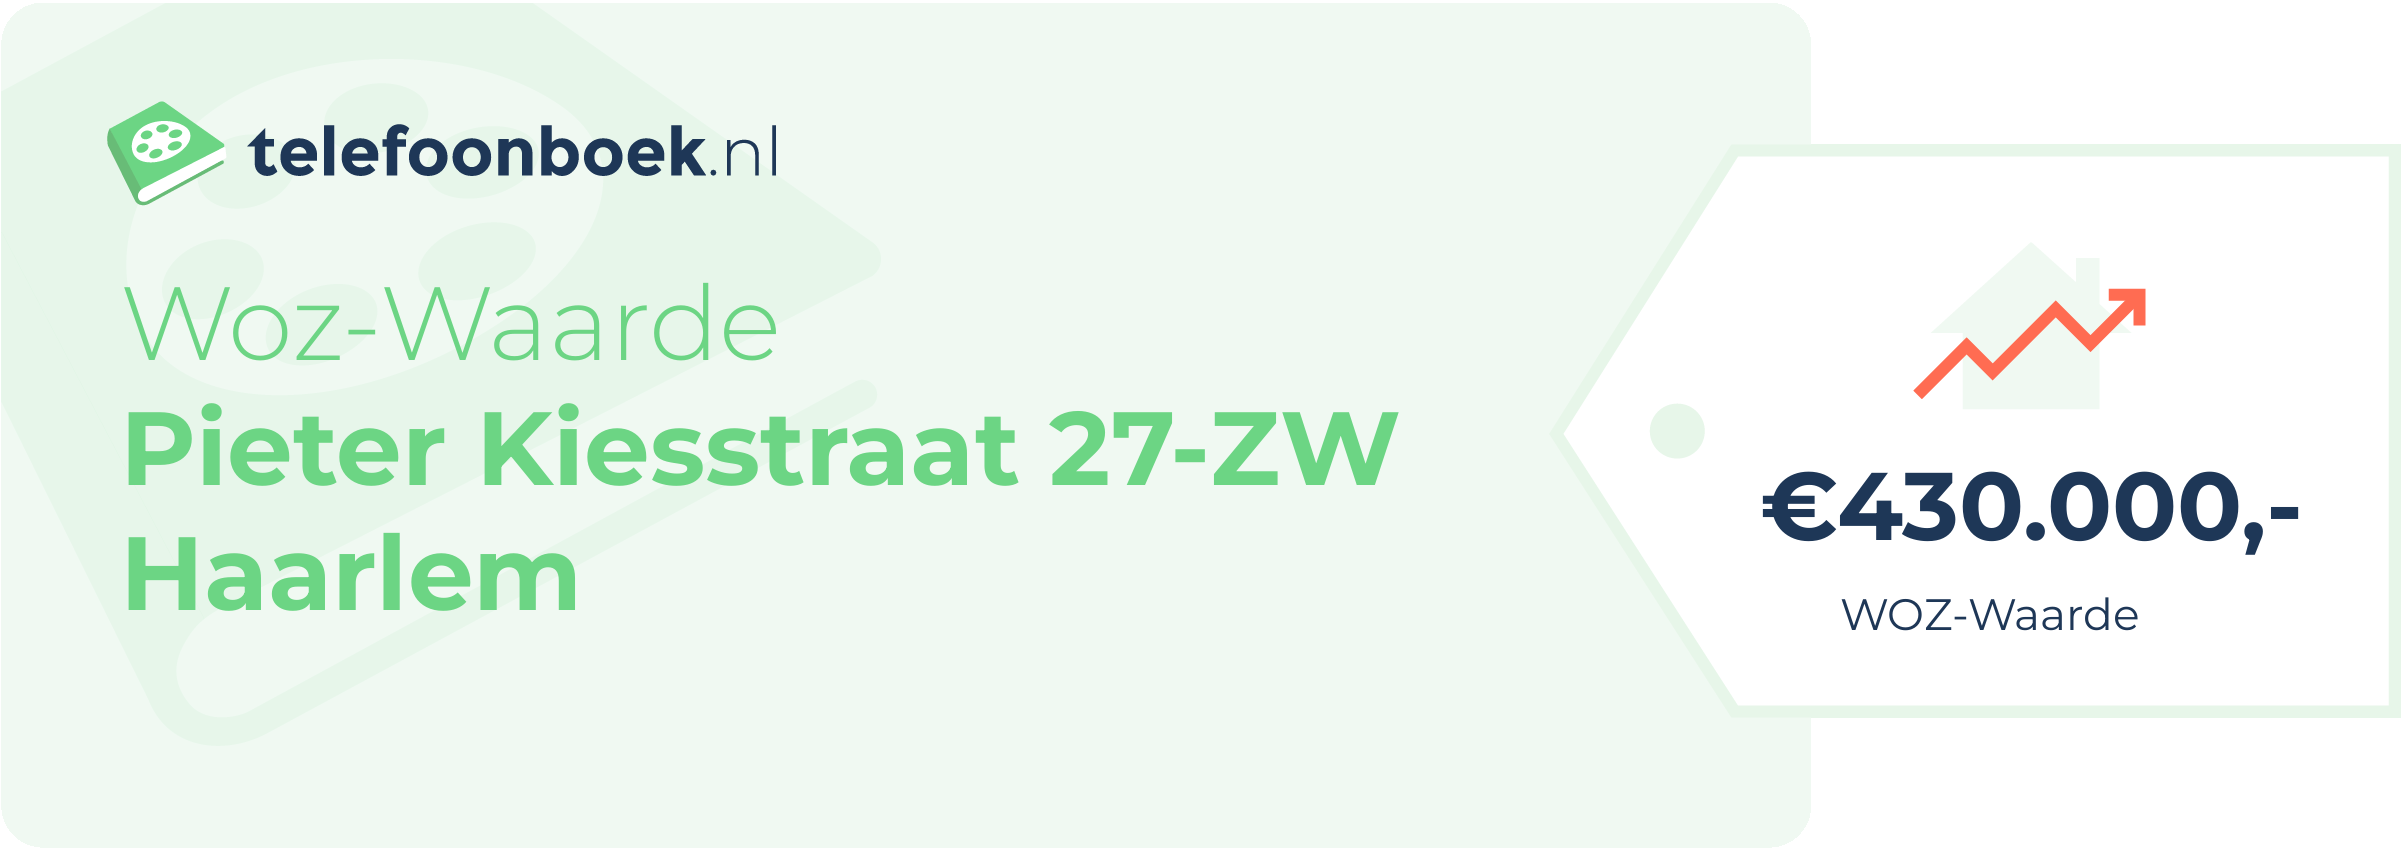 WOZ-waarde Pieter Kiesstraat 27-ZW Haarlem